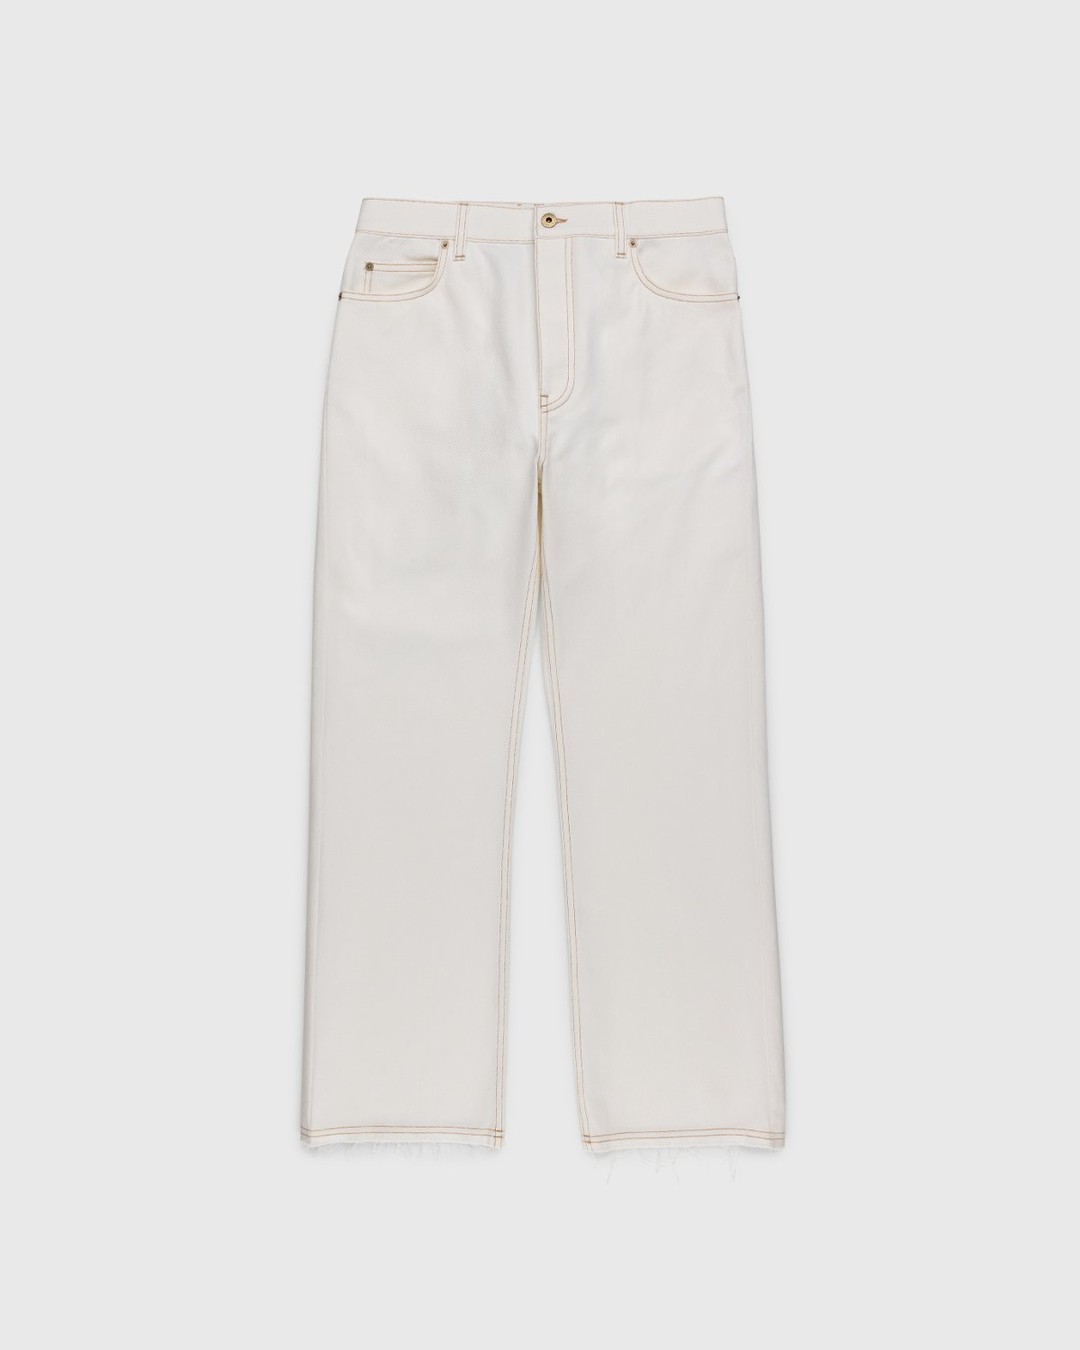 Loewe – Paula's Ibiza Boot Cut Denim Trousers White - Denim - White - Image 1